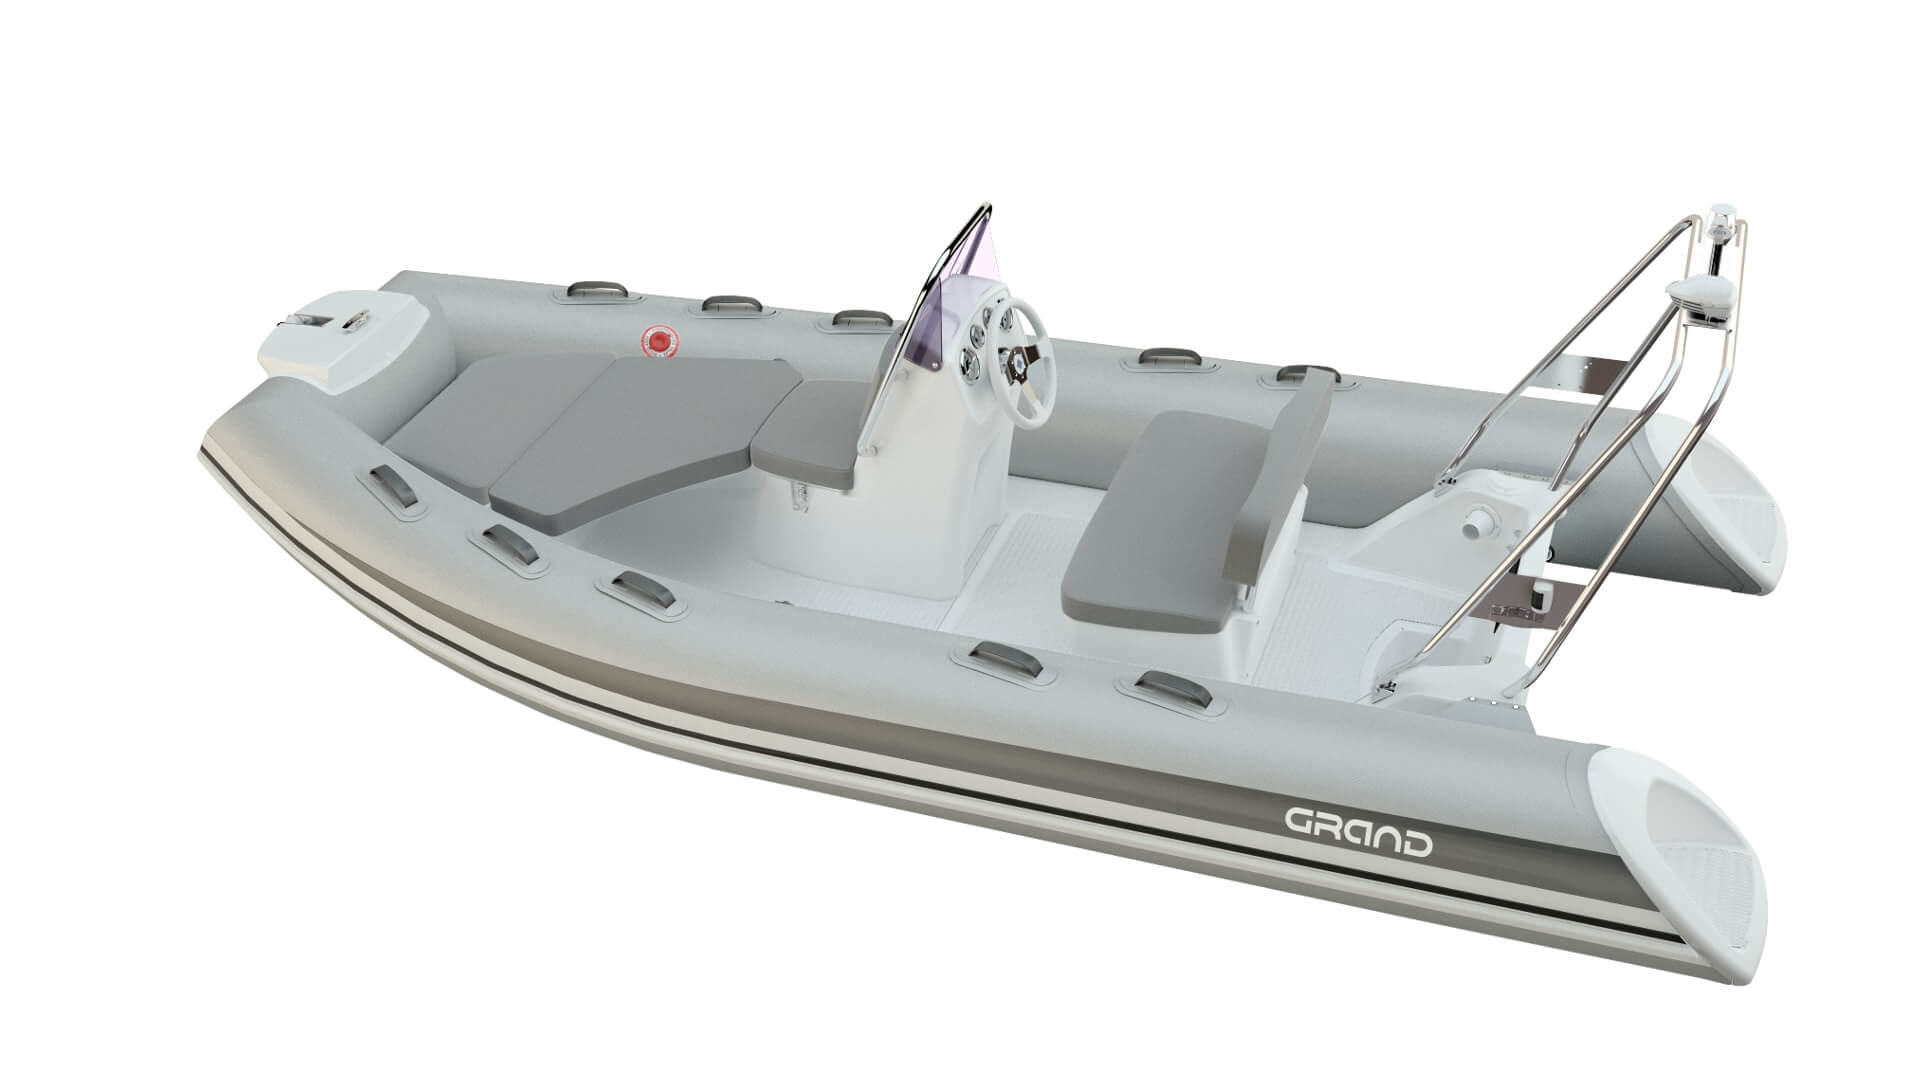 Надувная лодка GRAND Silver Line S420, GRAND Silver Line S420NL, GRAND Silver Line S420NLF, GRAND S520NL, GRAND S520NLF, S520NL, S520NLF, Надувная лодка GRAND, Надувная лодка ГРАНД, Надувная лодка с жестким дном, RIB, Rigid Inflatable Boats